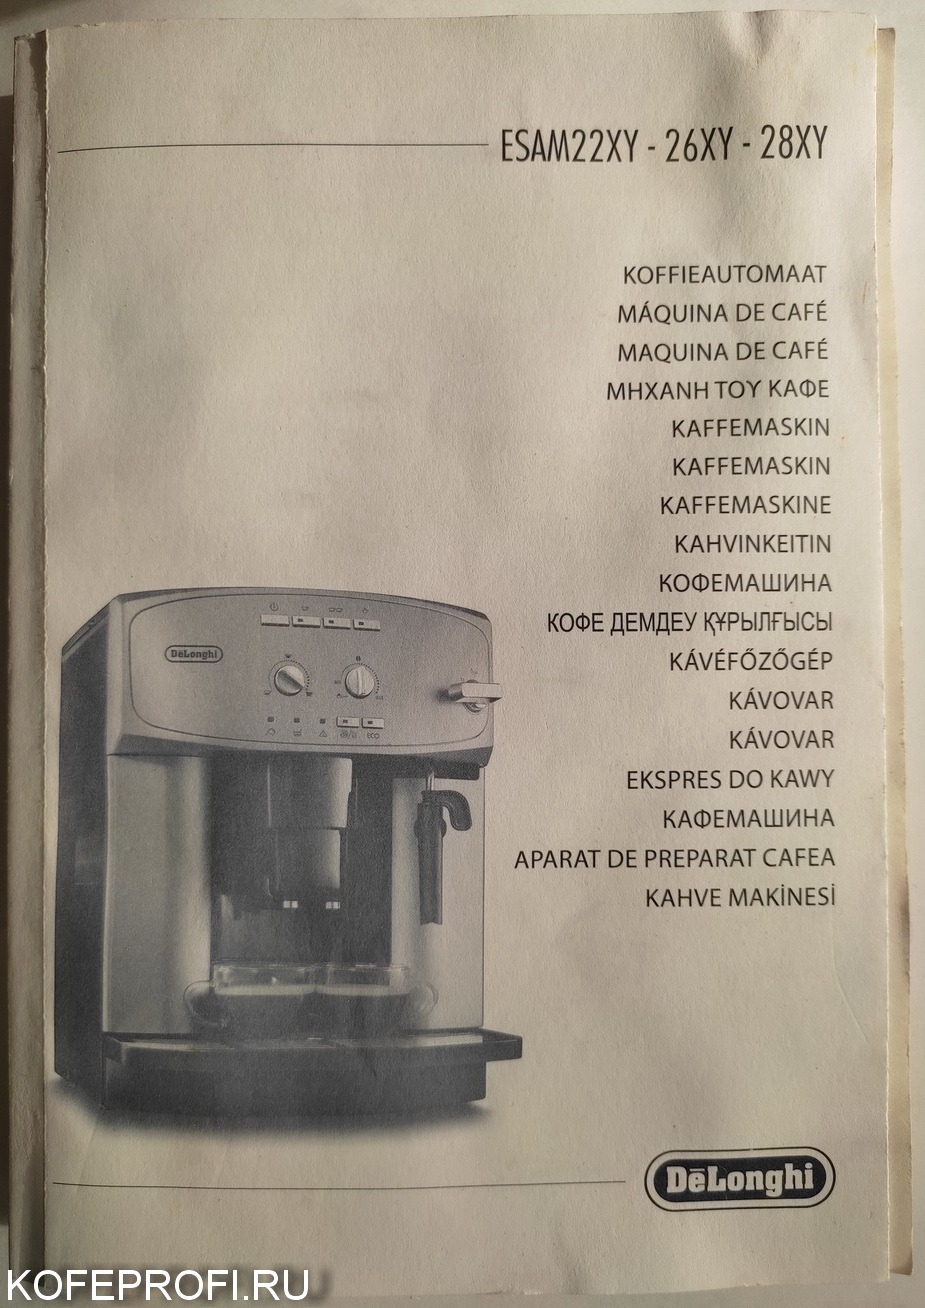 очистка от накипи  кофемашины delonghi инструкция 